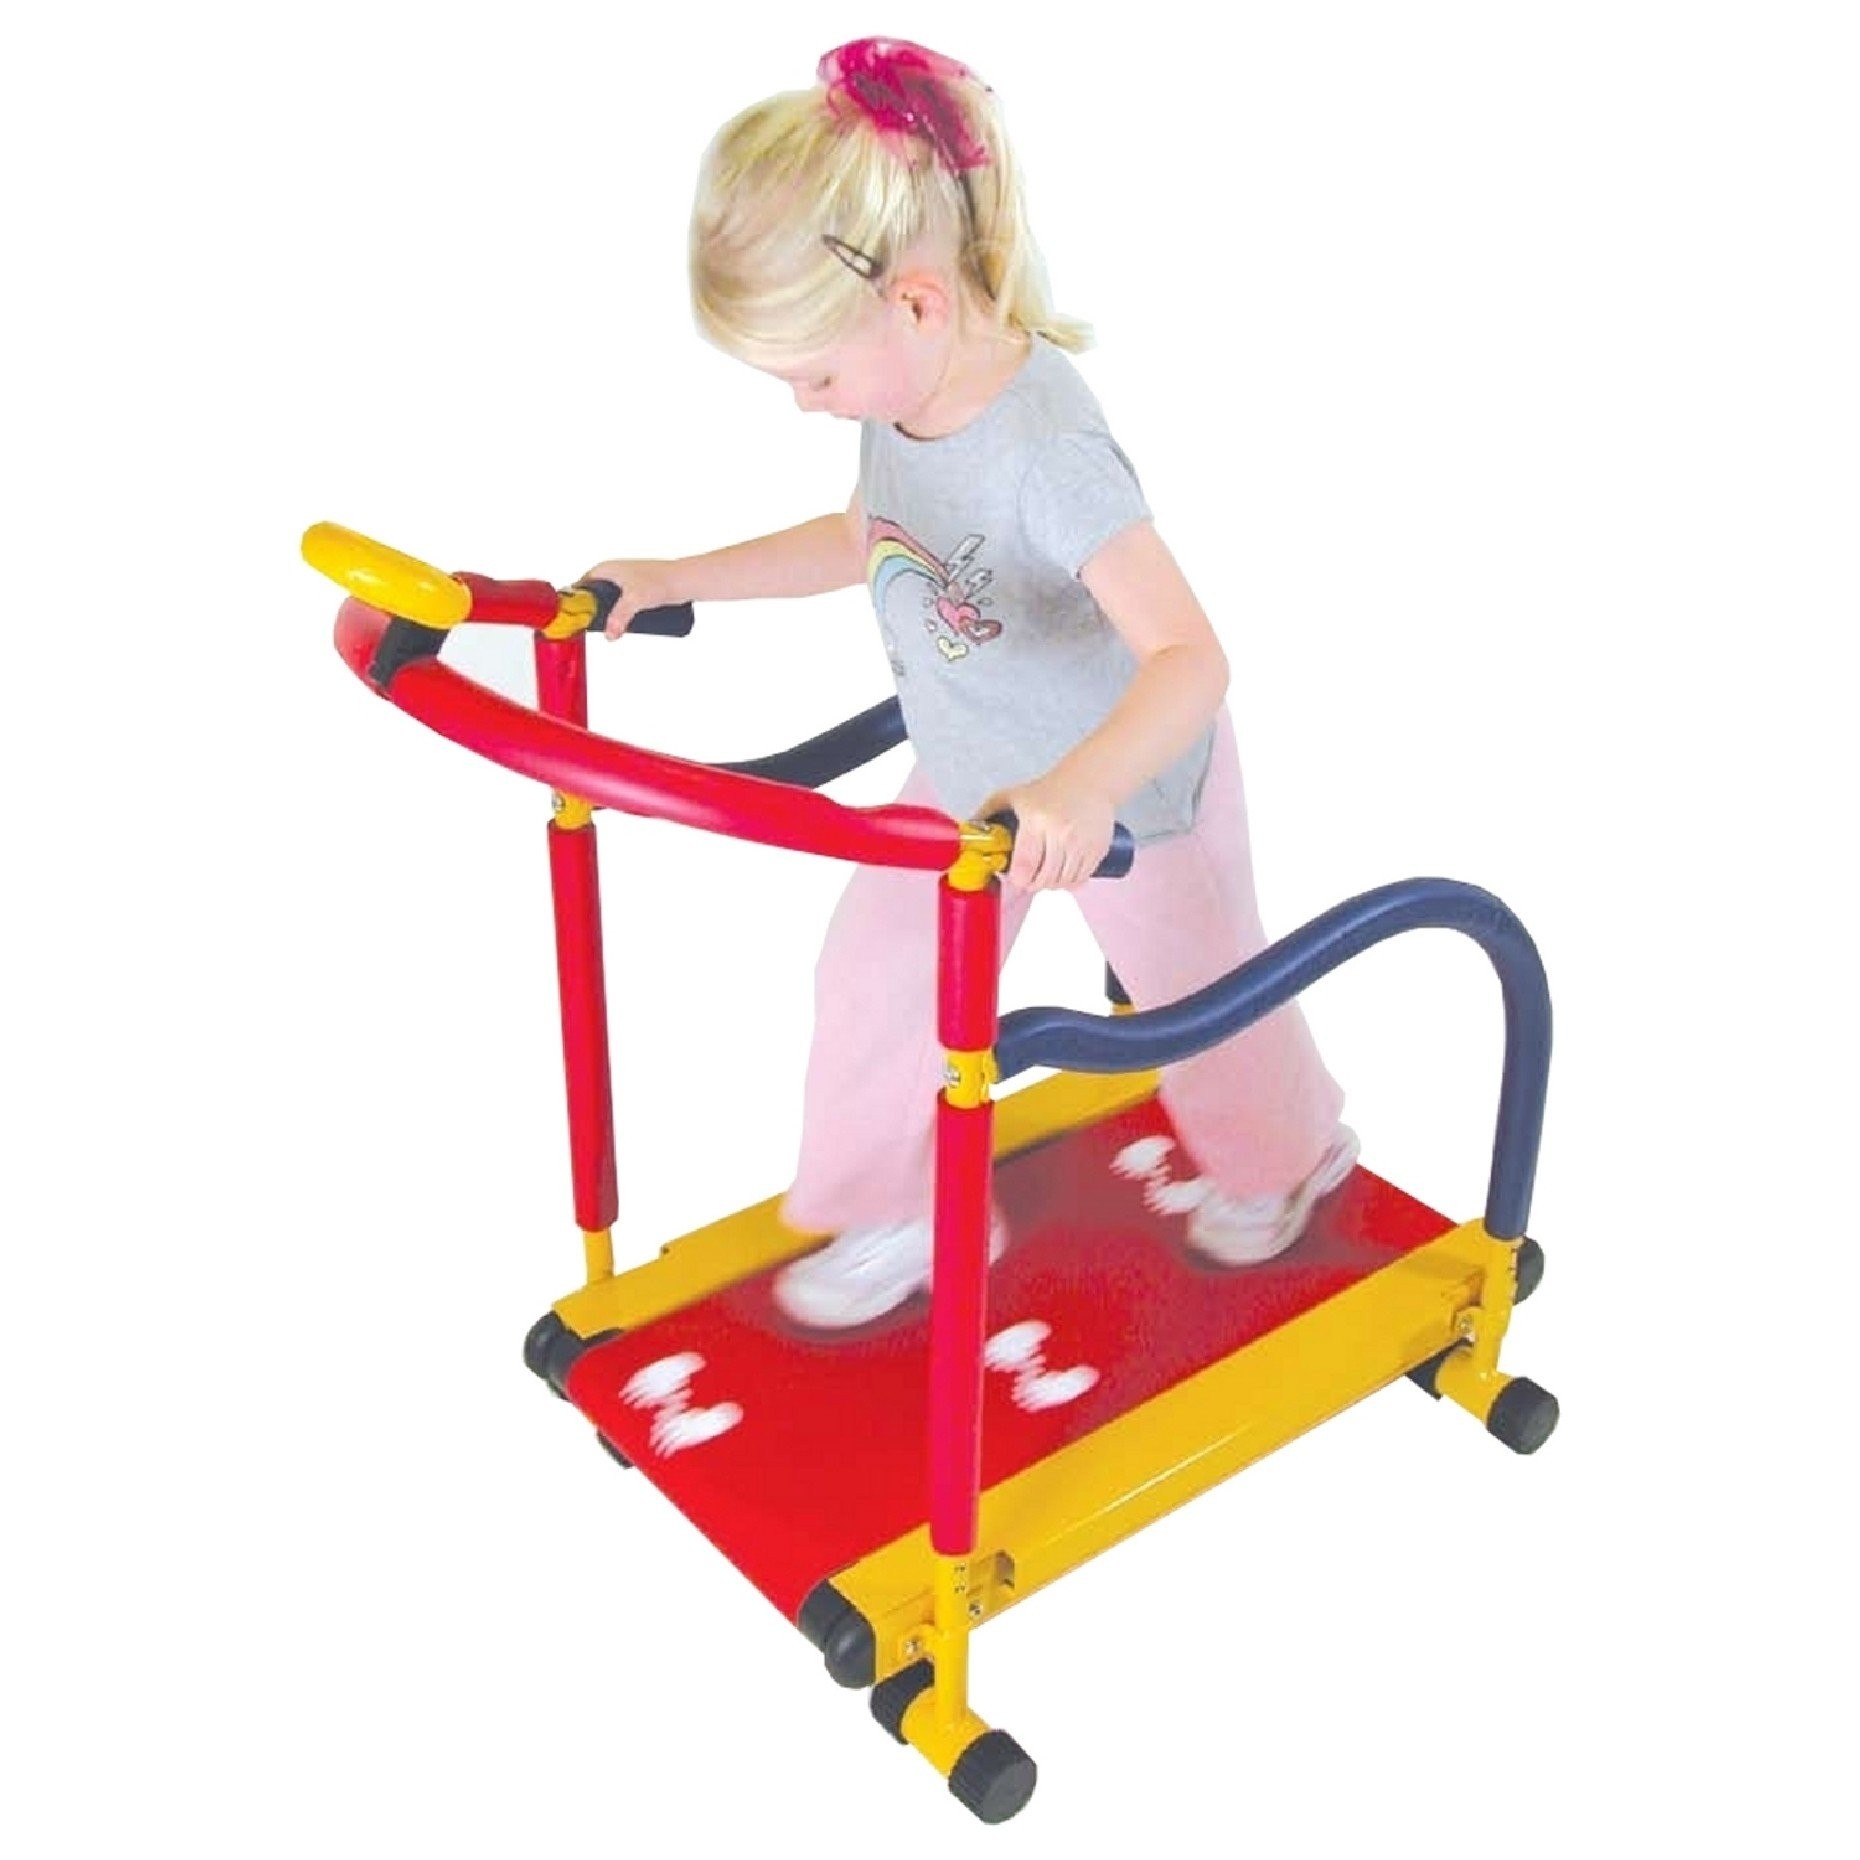 Fun and Fitness Kids Treadmill